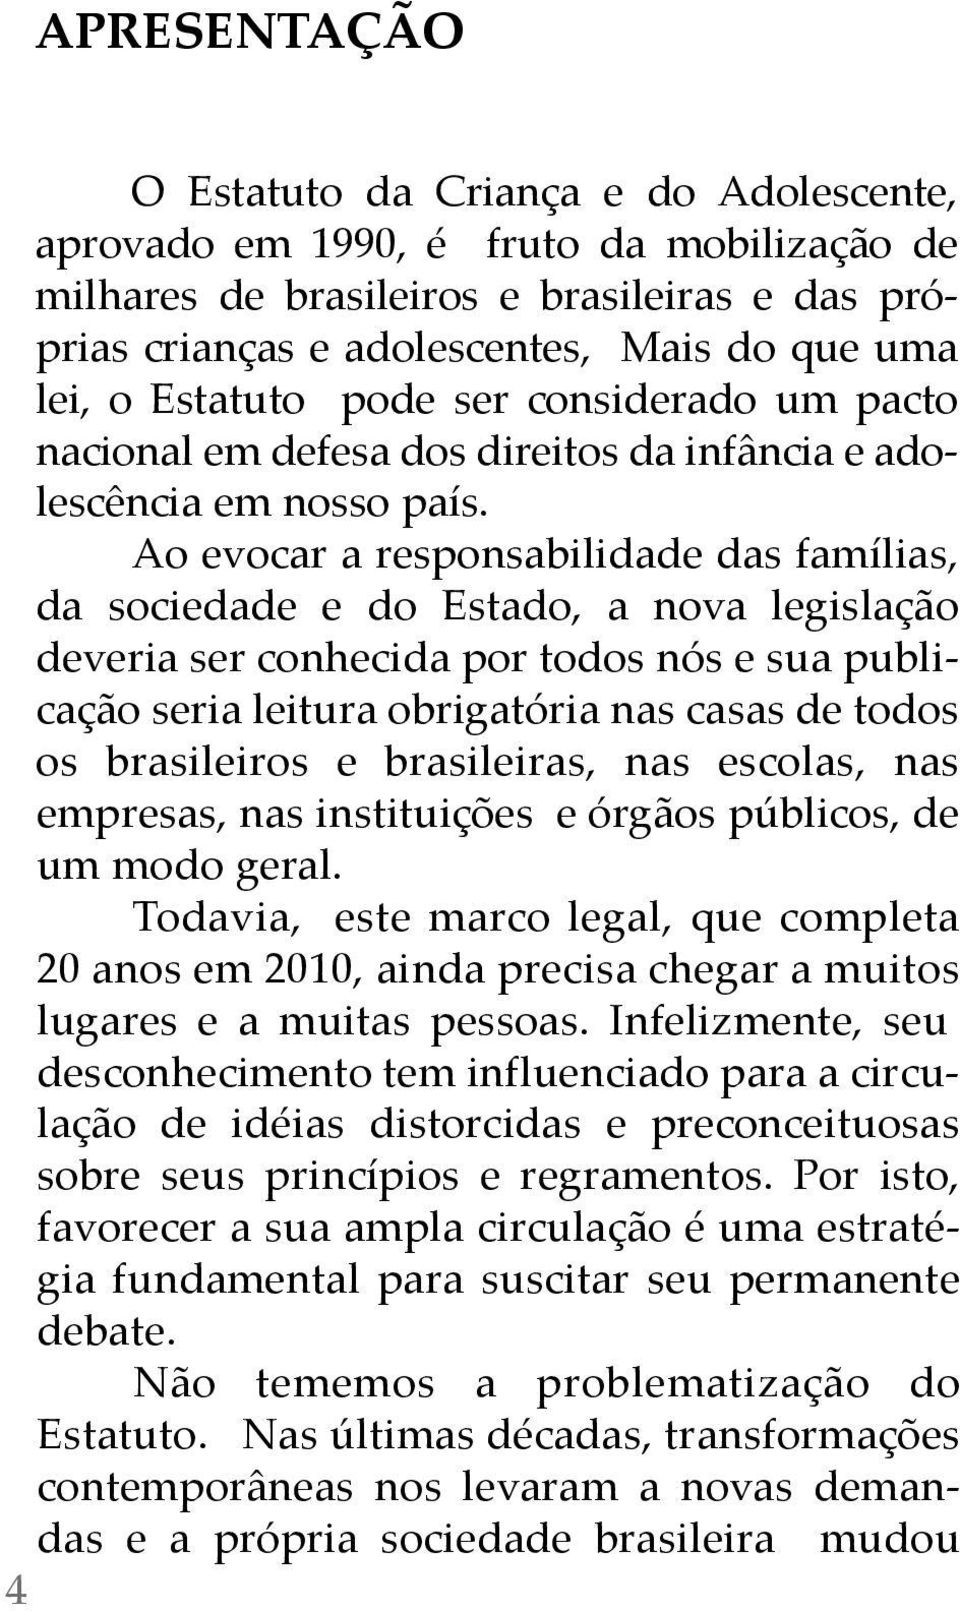 ao evocar a responsabilidade das famílias, da sociedade e do estado, a nova legislação deveria ser conhecida por todos nós e sua publicação seria leitura obrigatória nas casas de todos os brasileiros